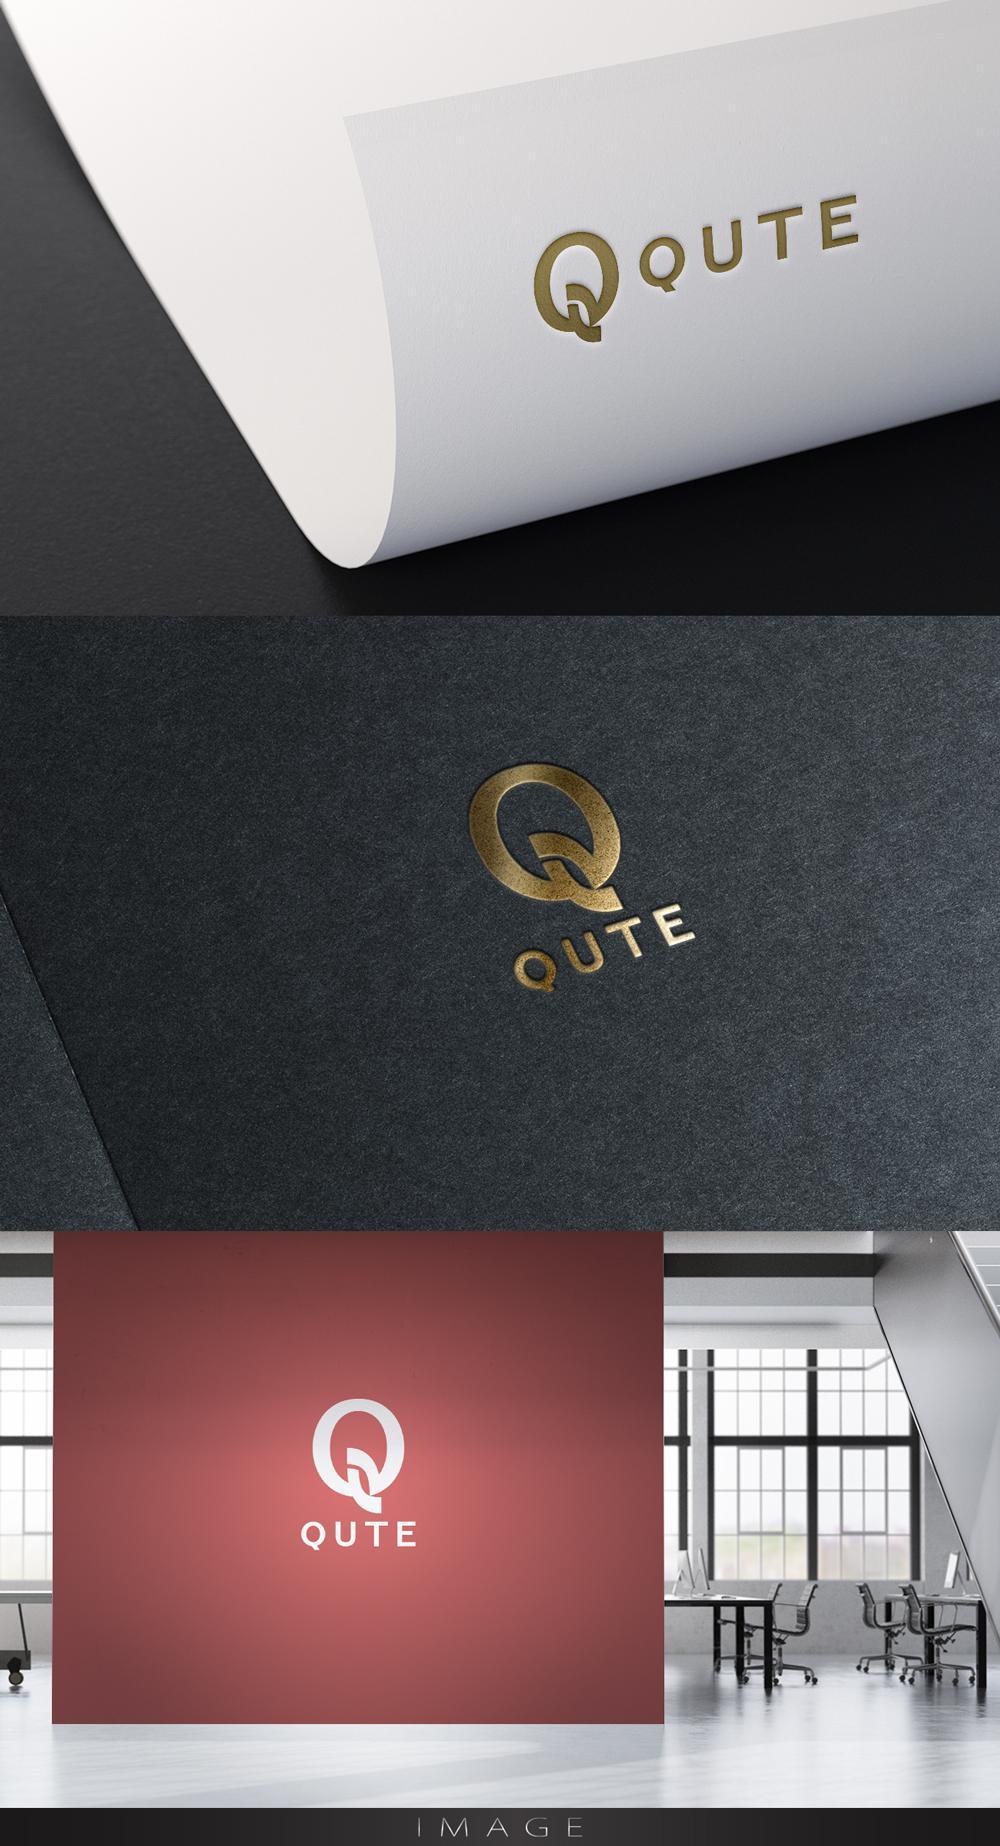 キャスティングサービス「QUTE」のロゴ